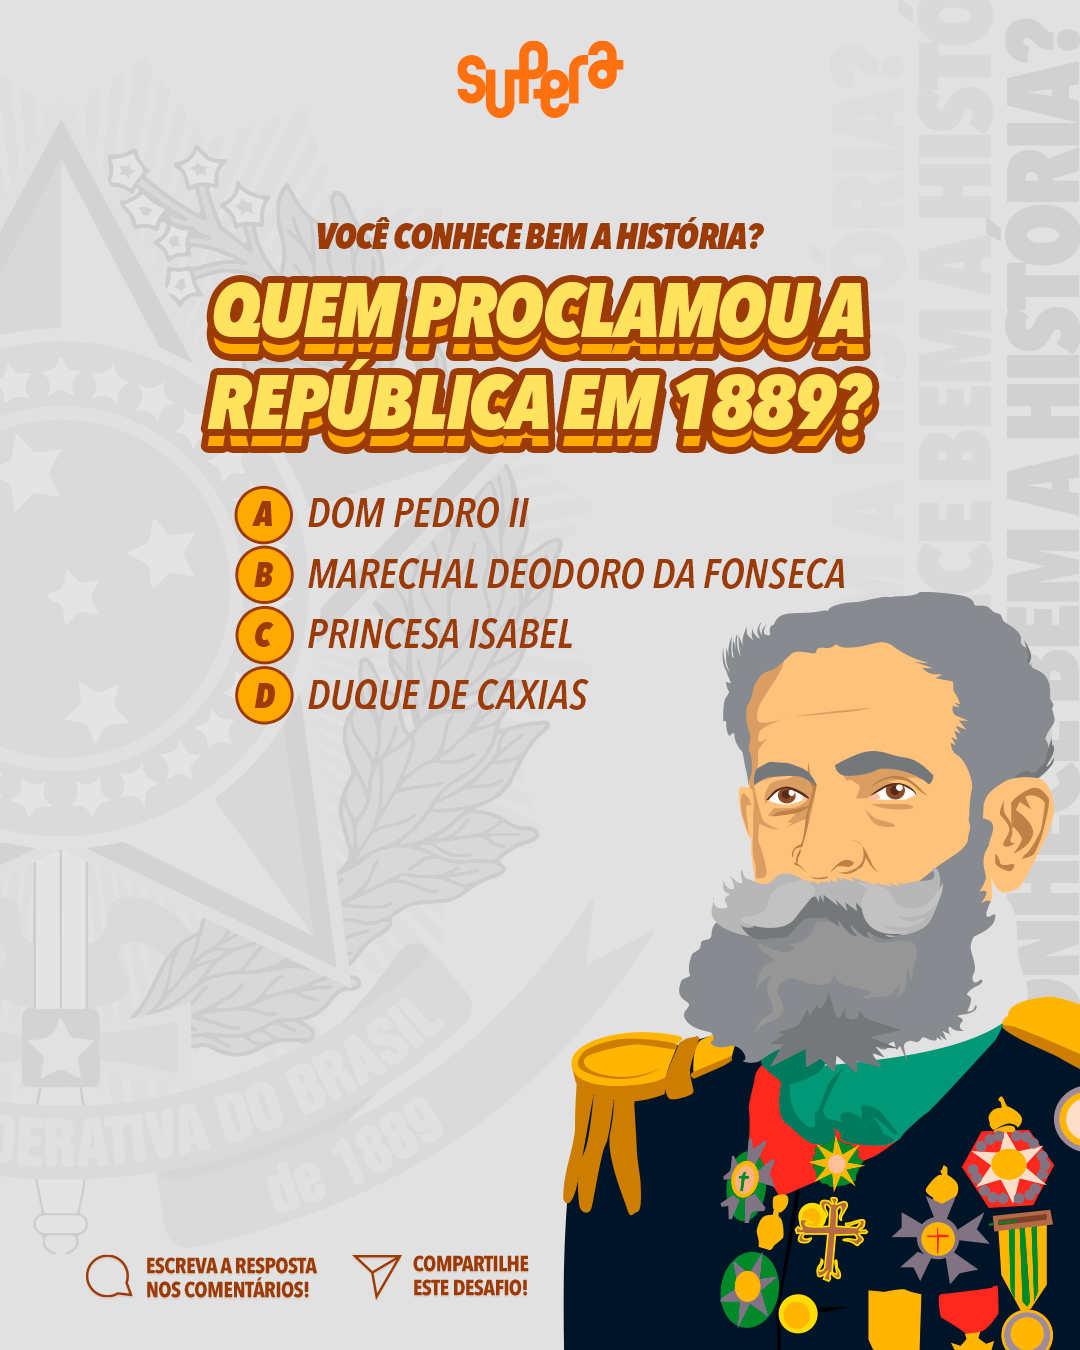 História da Proclamação da República no Brasil.